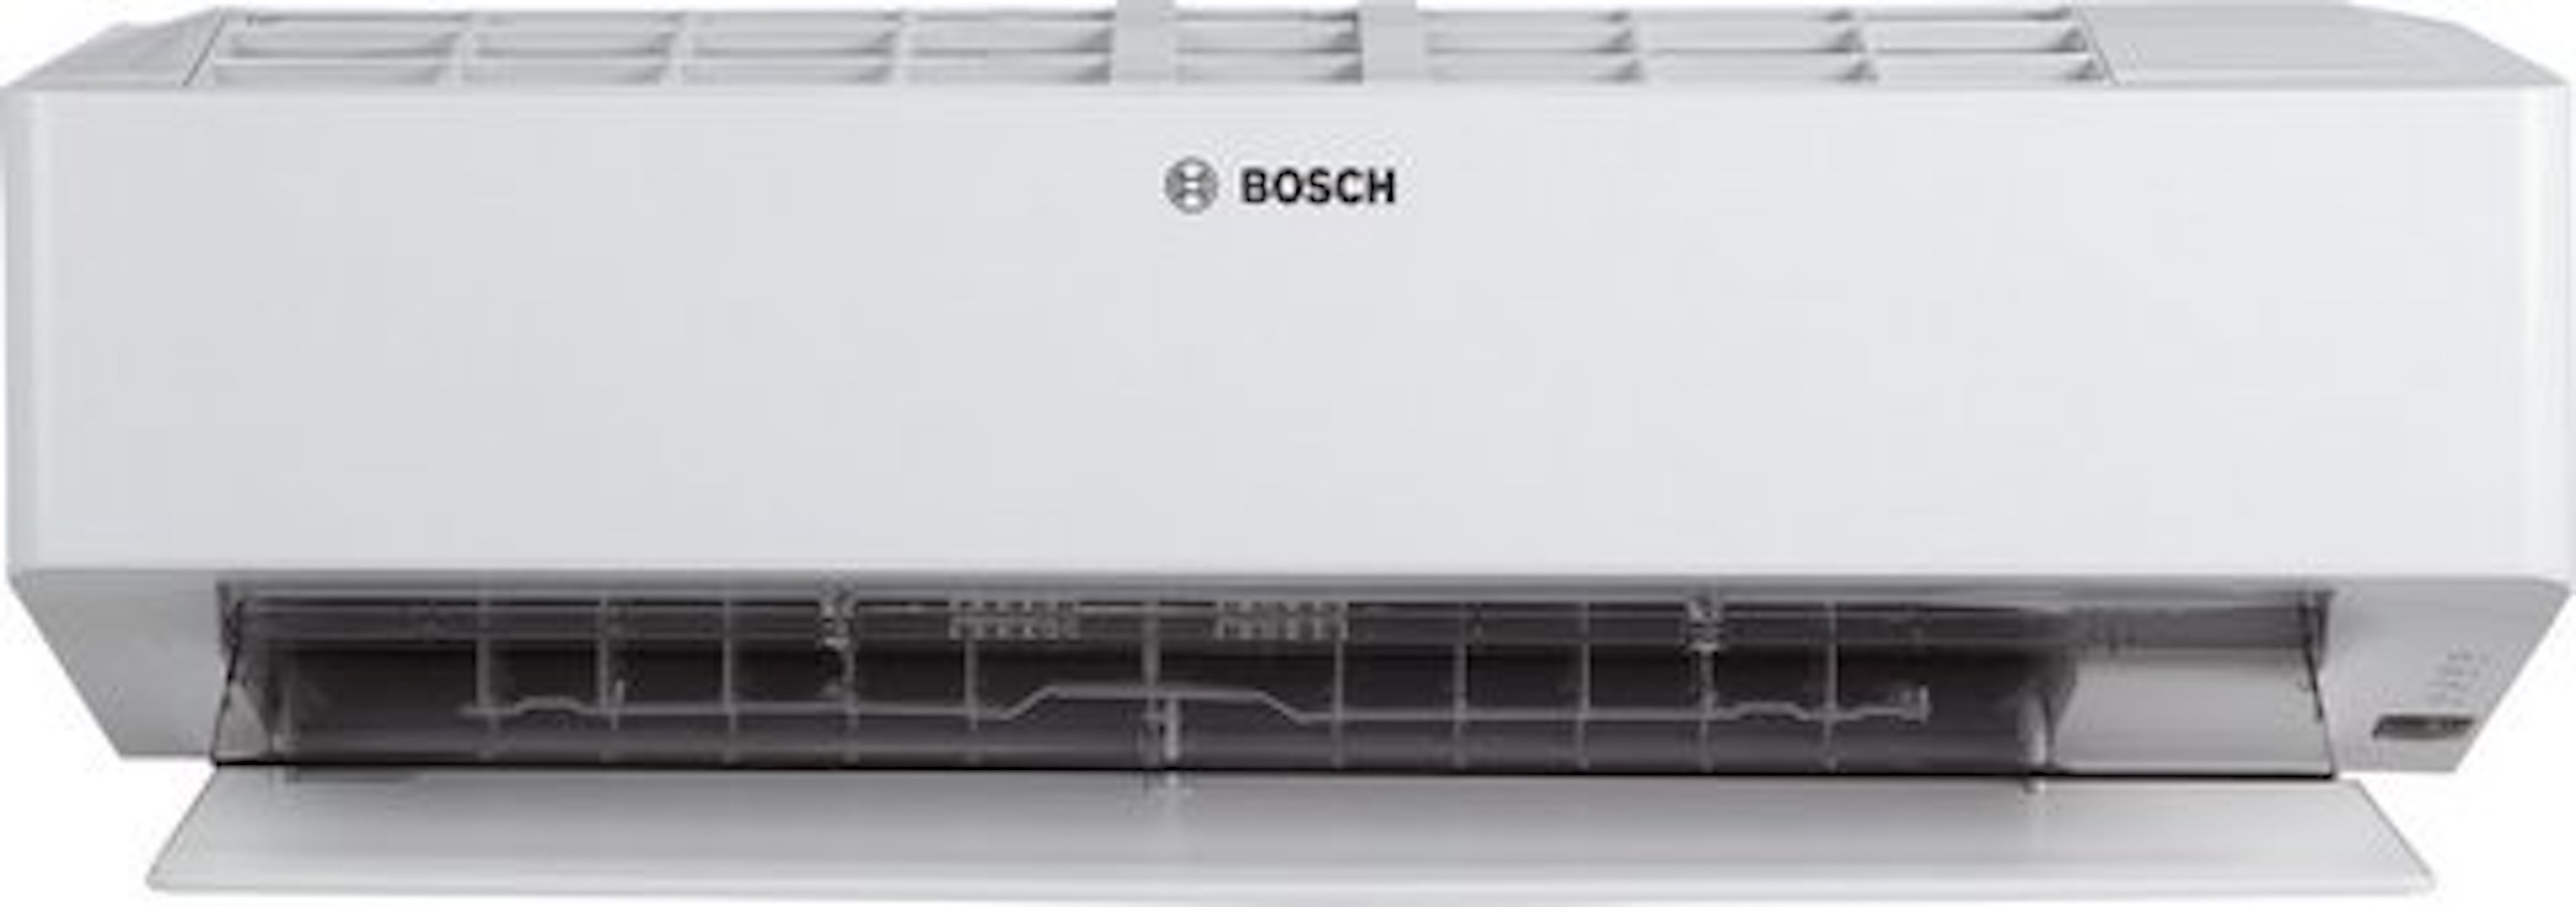 BOSCH Klimagerät CL8000i-W 25 E, Split Inneneinheit, 3,5 kW, Coanda Air Flow